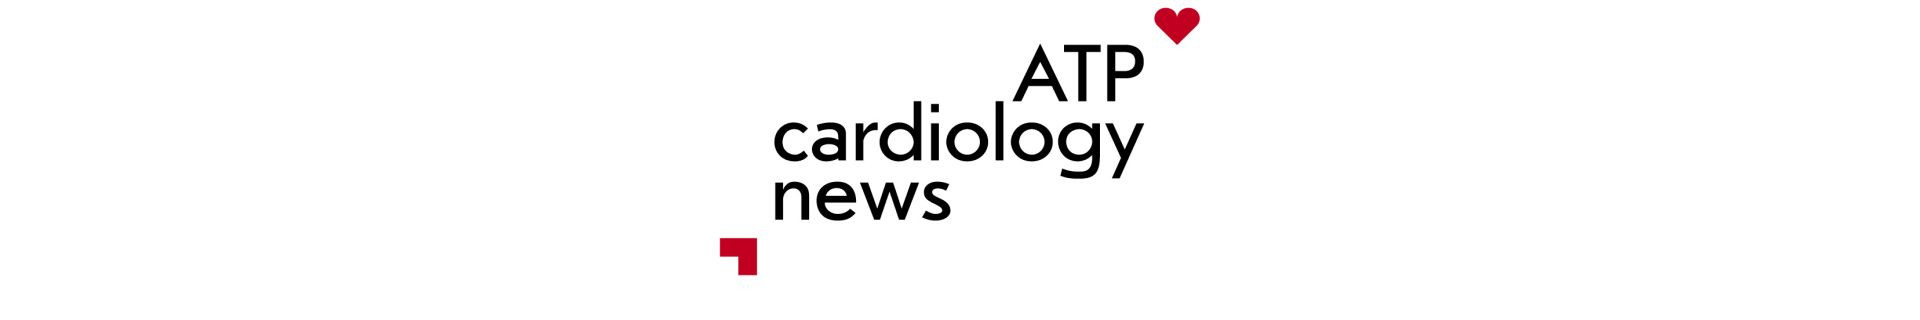 ATP Cardiology news